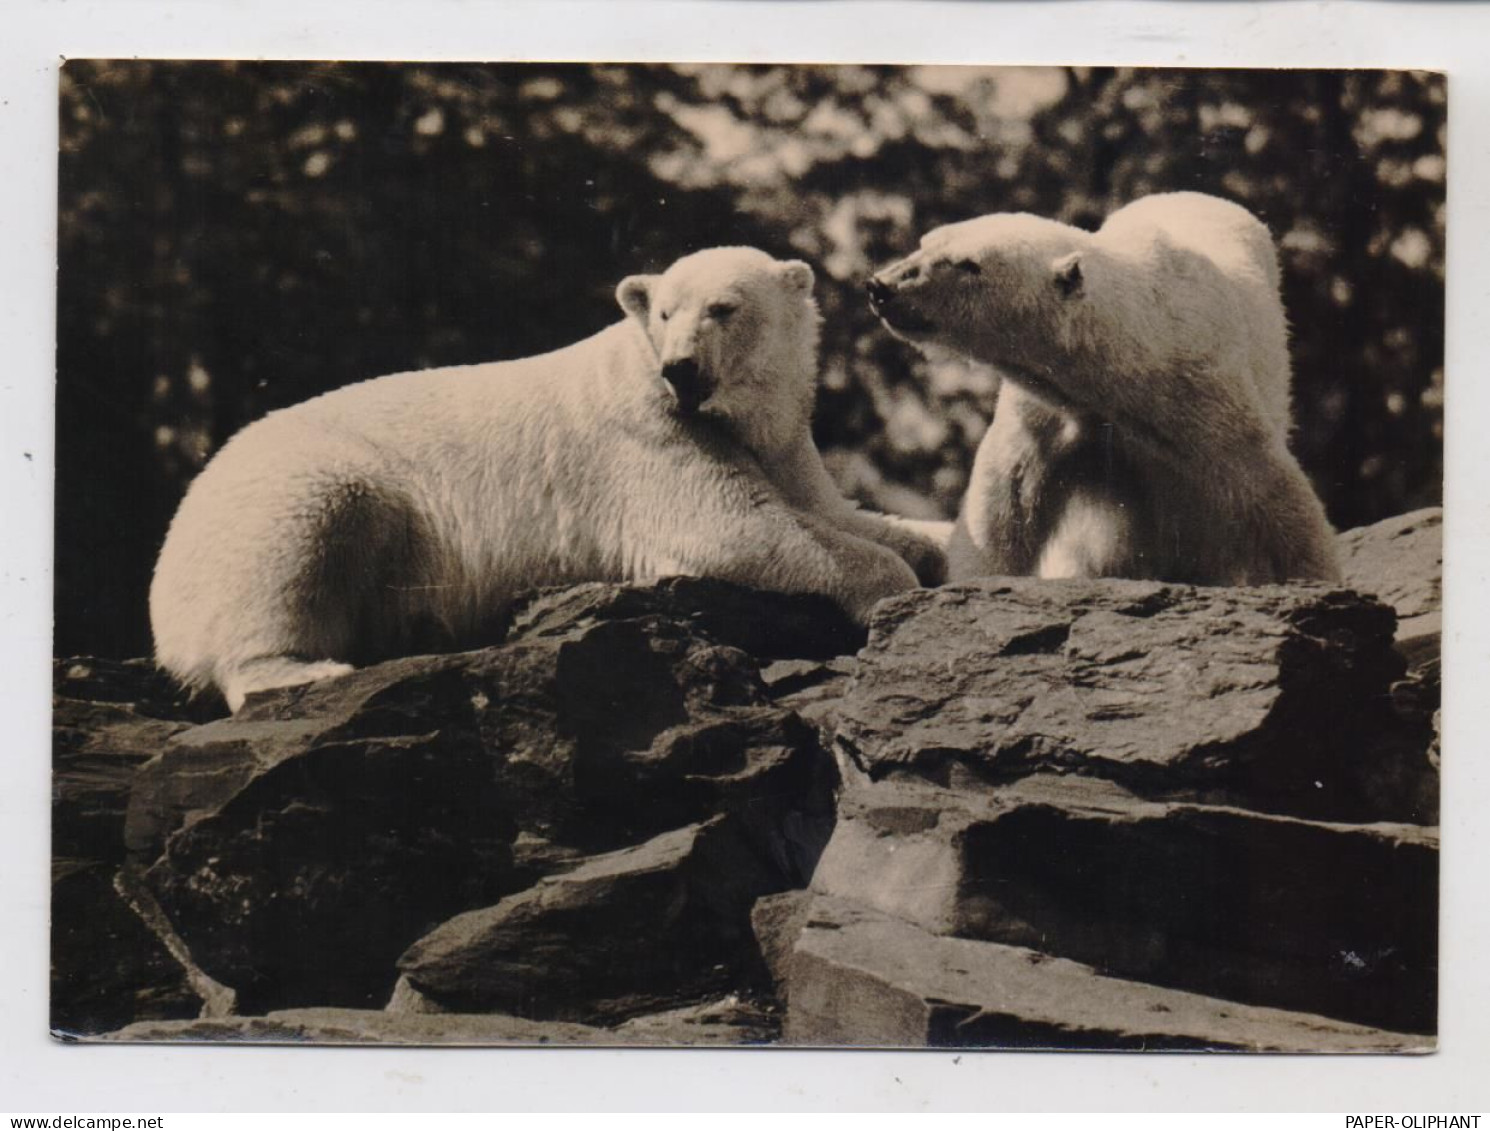 1000 BERLIN - FRIEDRICHSFELD, Tierpark Berlin (Zoo), Eisbären, 1963 - Hohenschoenhausen